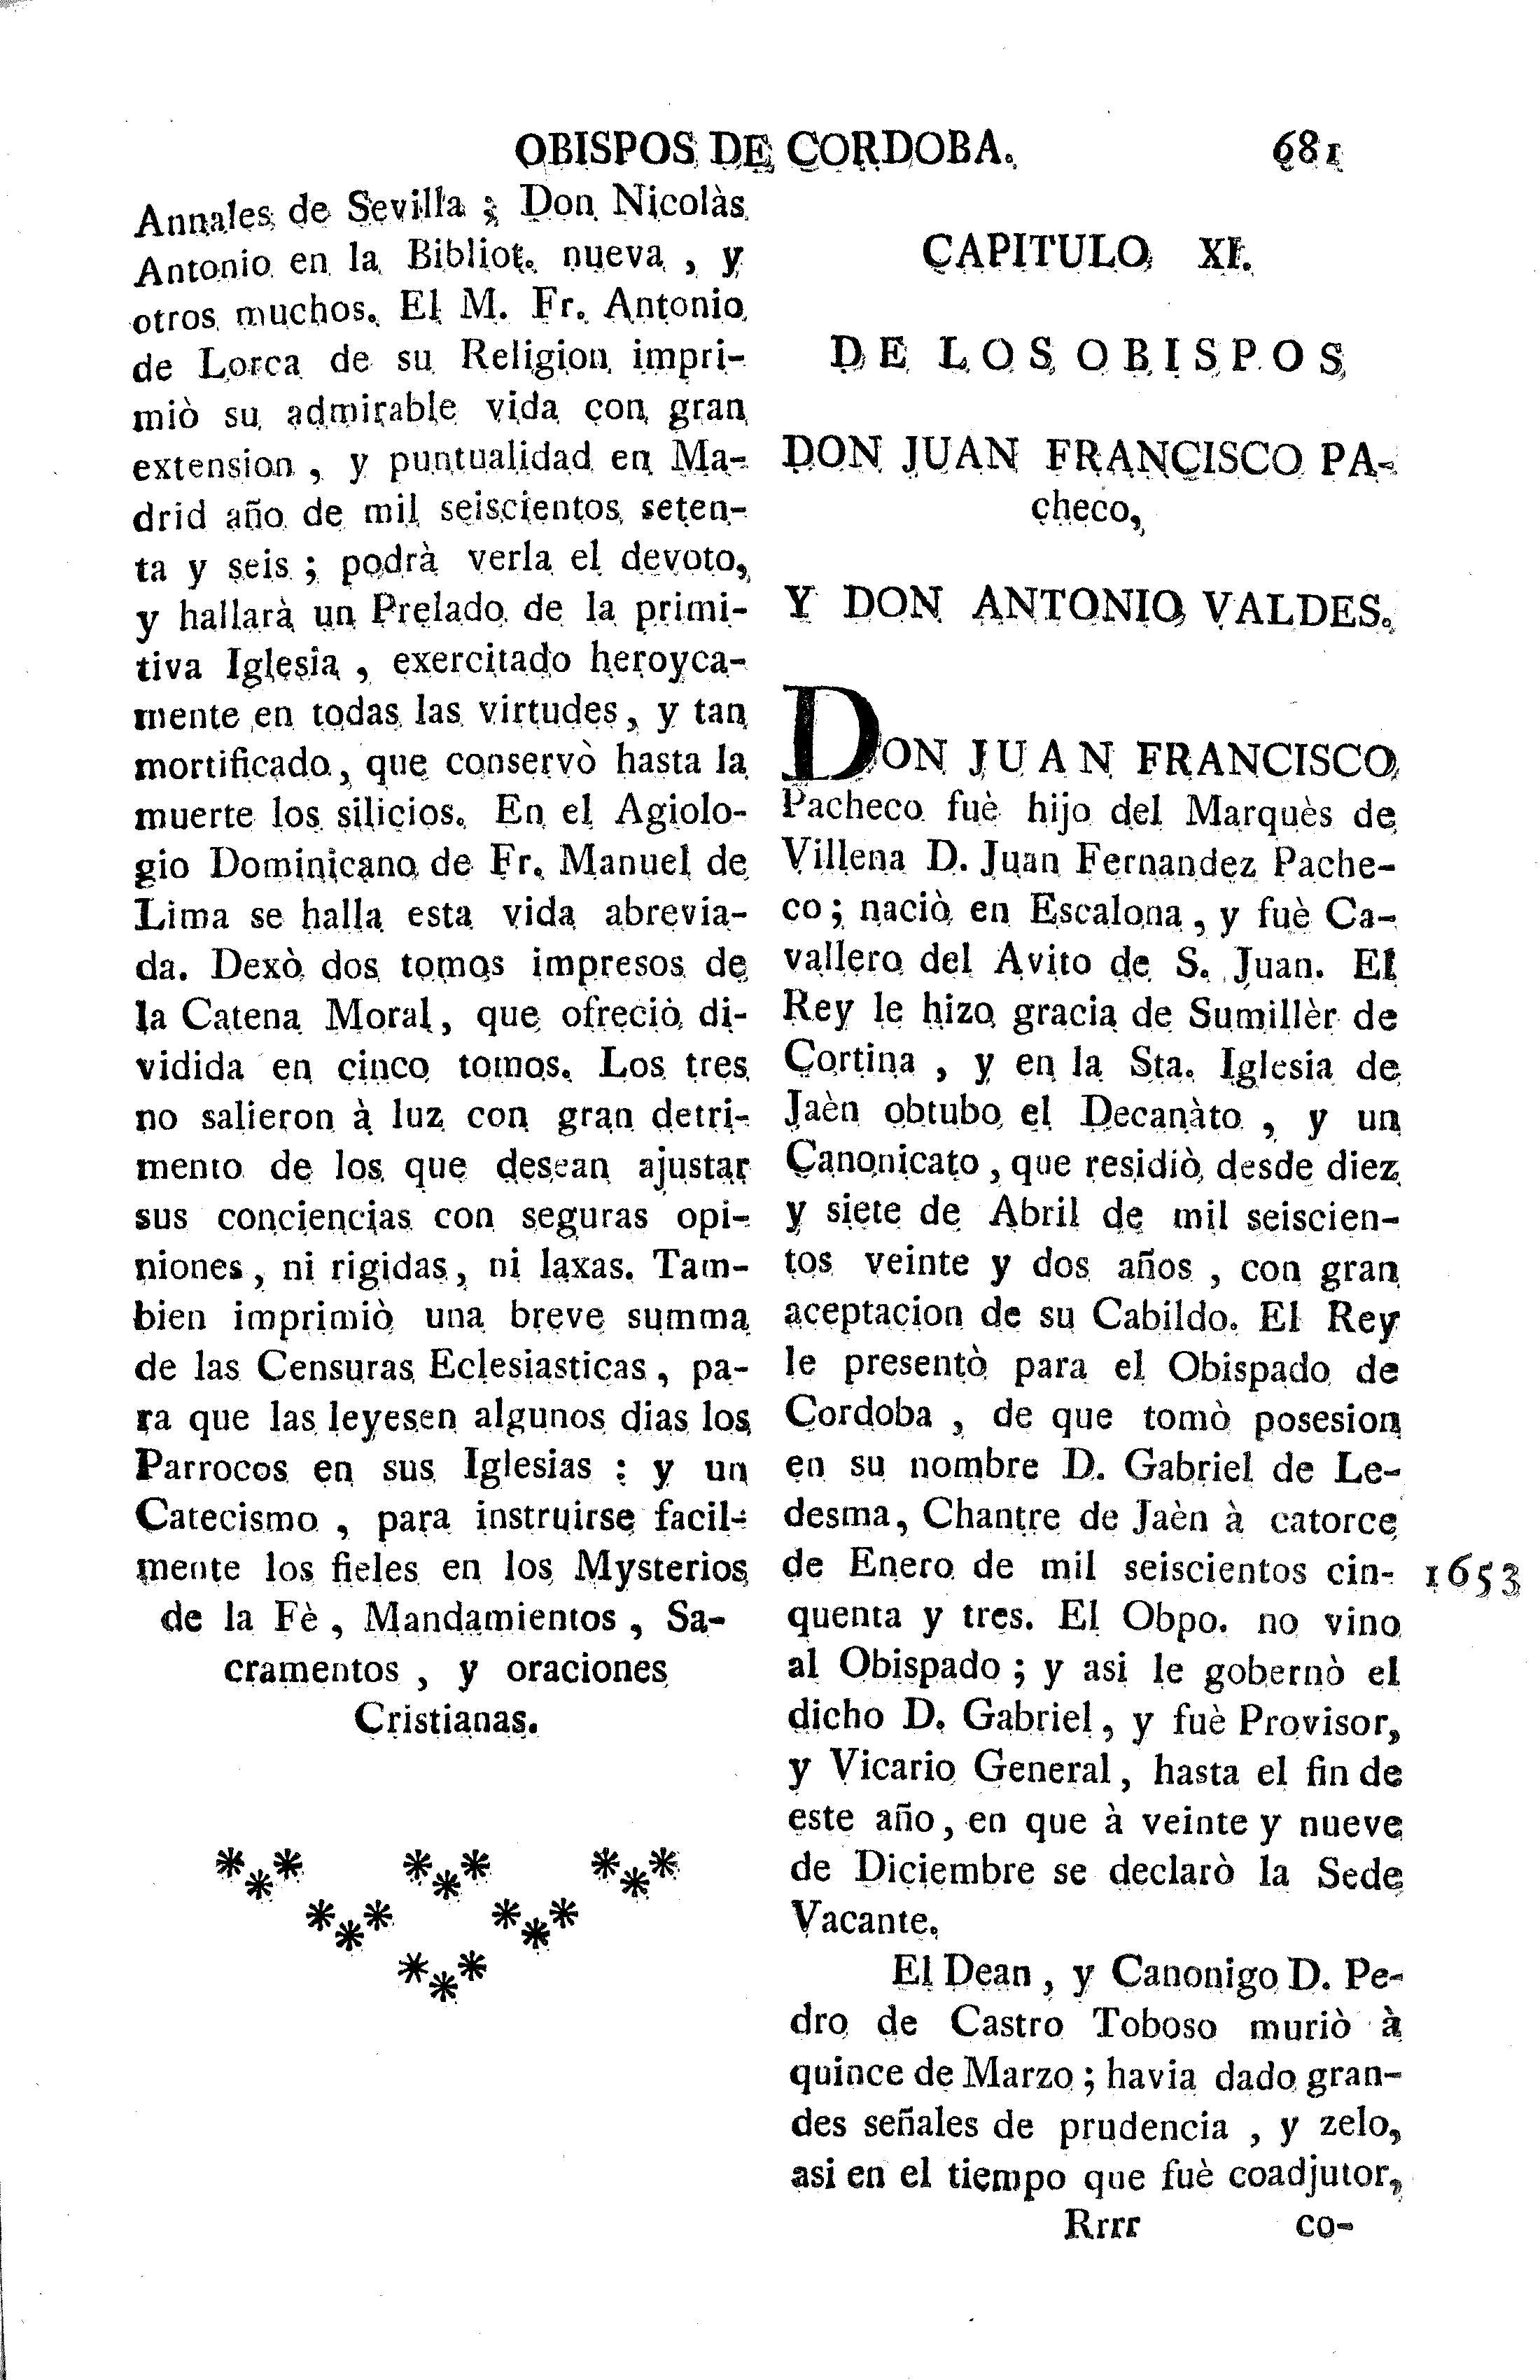 Capitulo XI. De los obispos Don Juan Francisco Pacheco, y Don Antonio Valdes